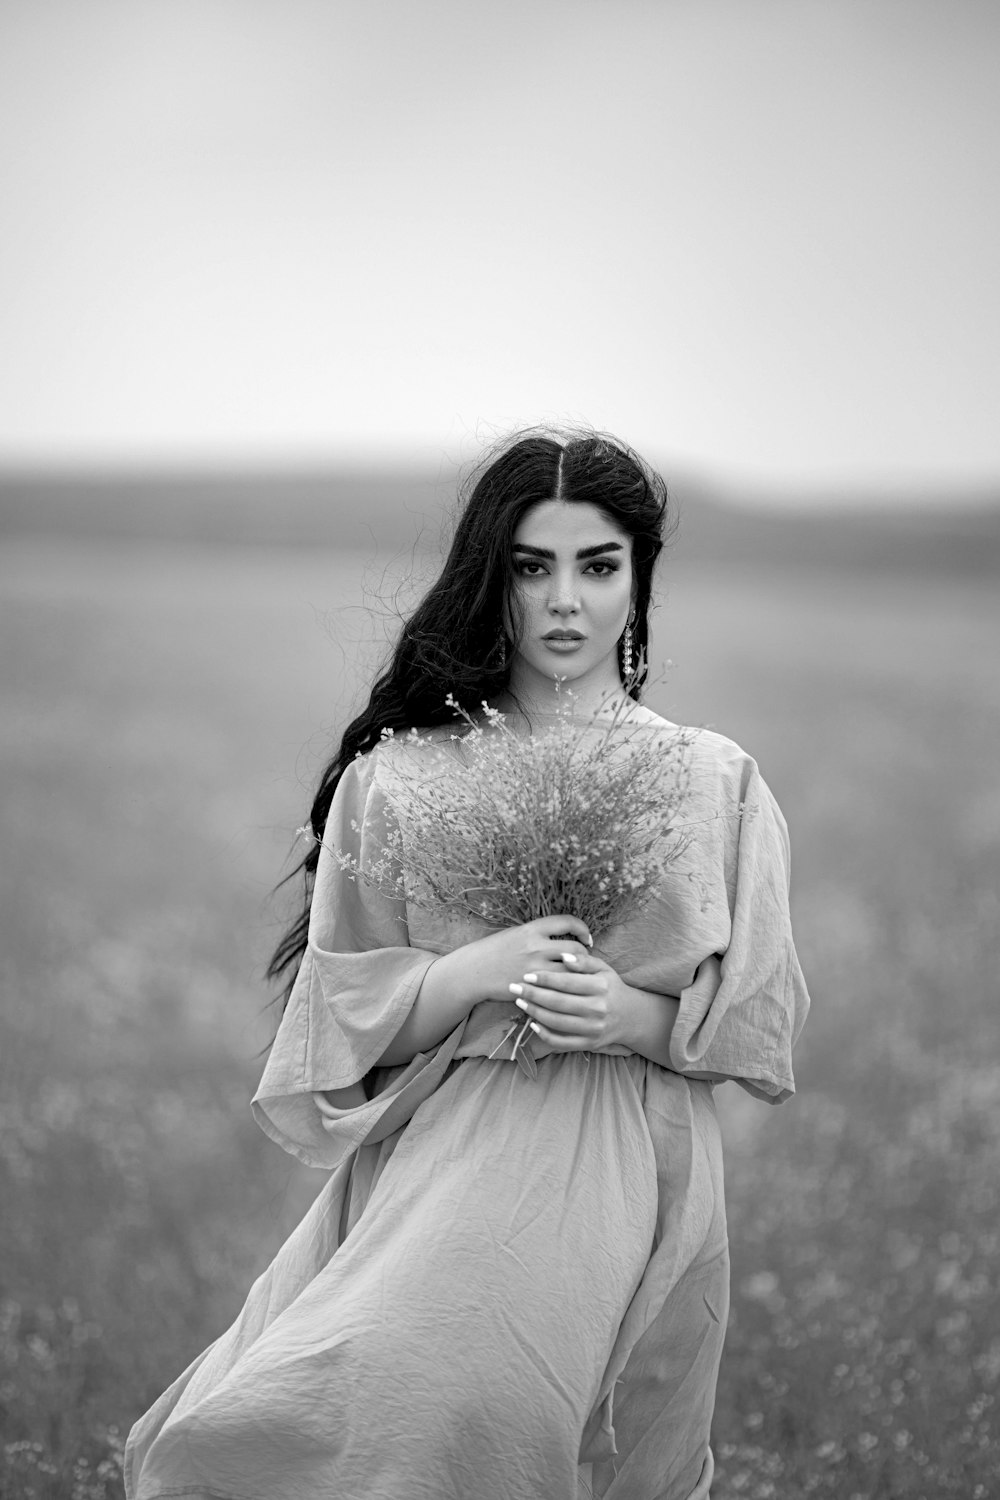 Clara Lago standing in a field